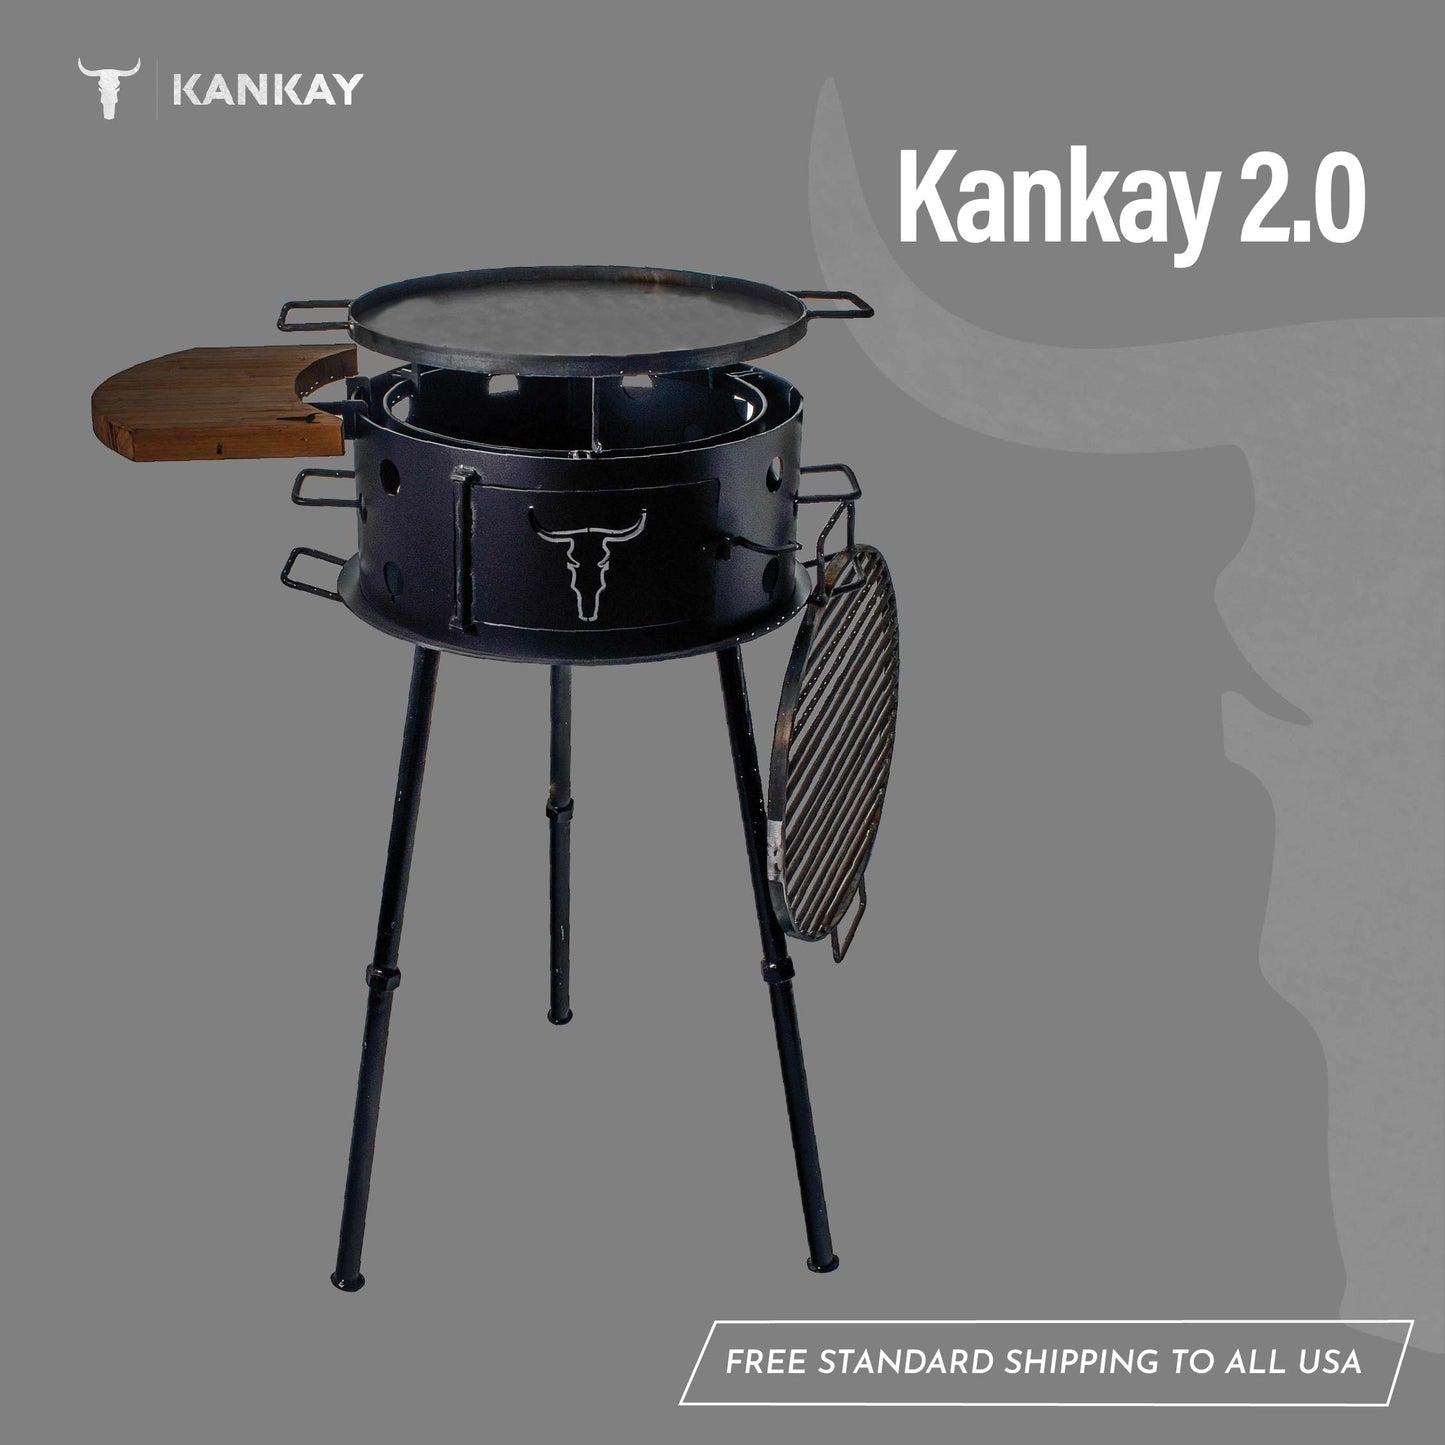 Kankay 2.0